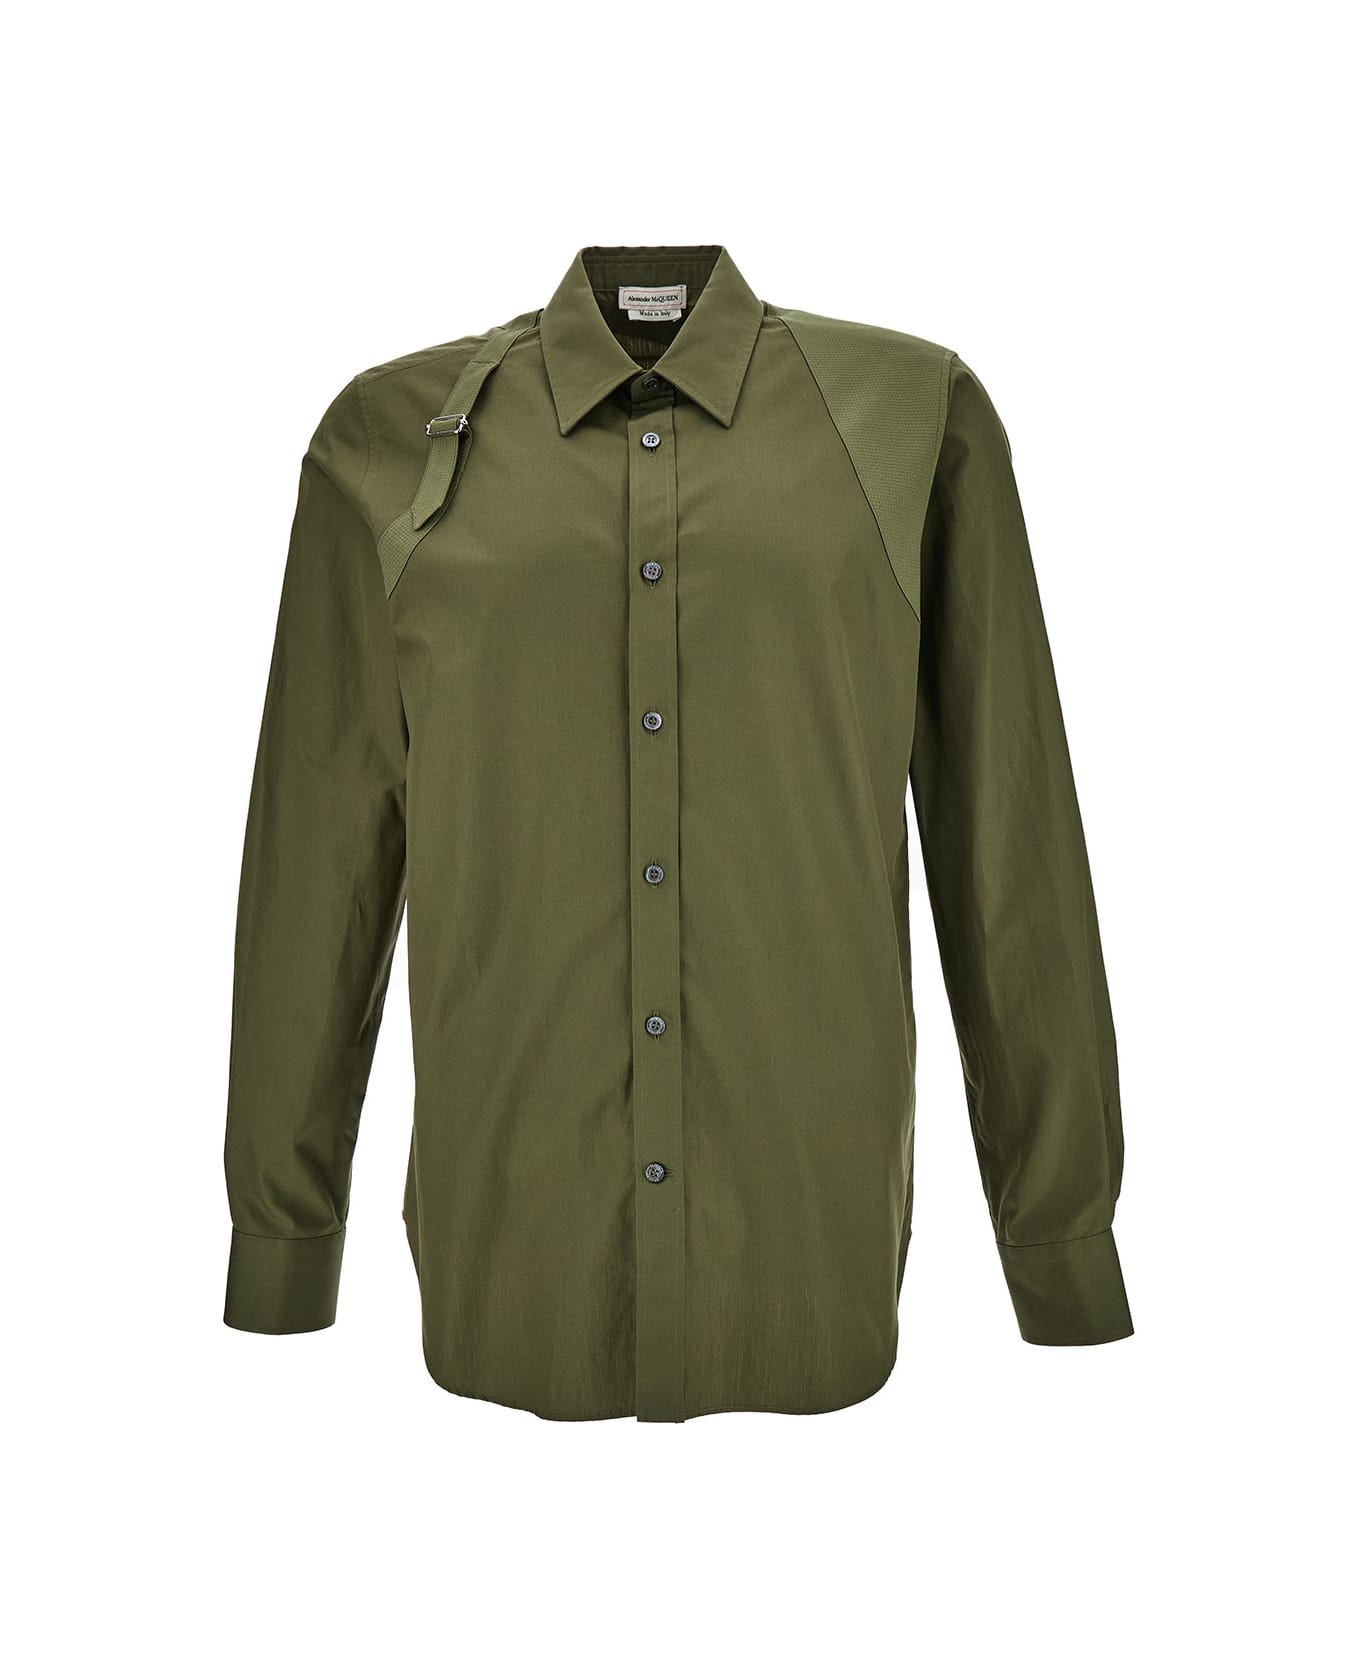 Alexander McQueen Shirt With Harness Detail - Green